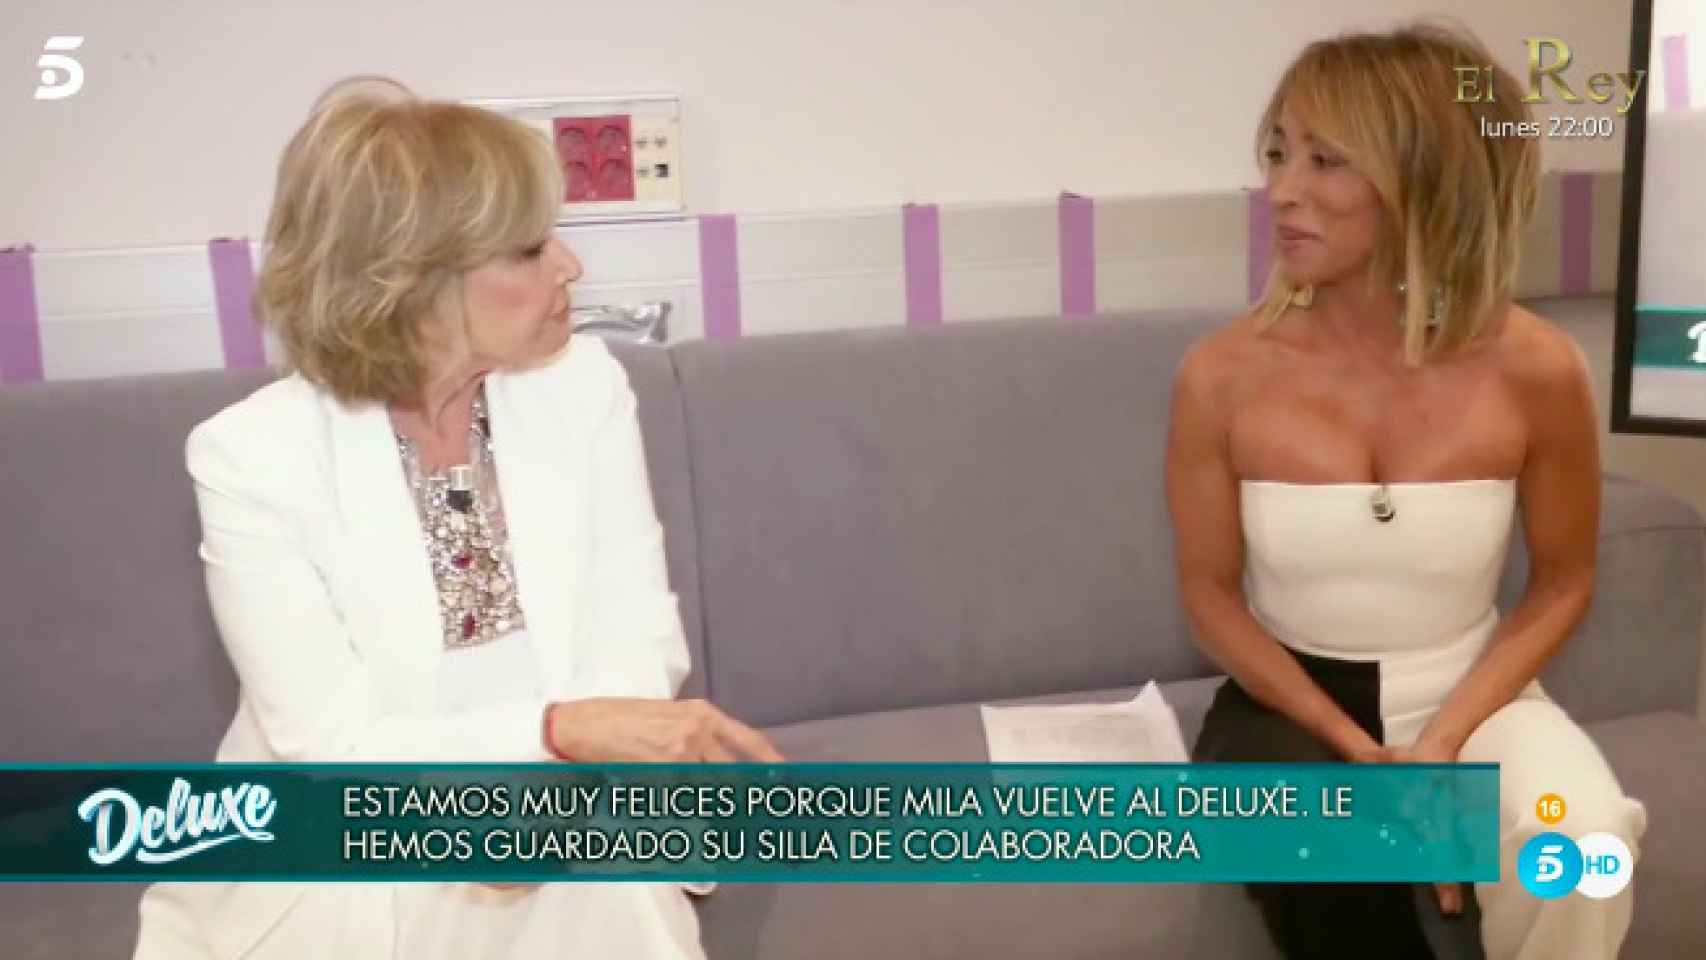 María Patiño, presentadora de la noche, quiso entrevistar en la intimidad a Mila.